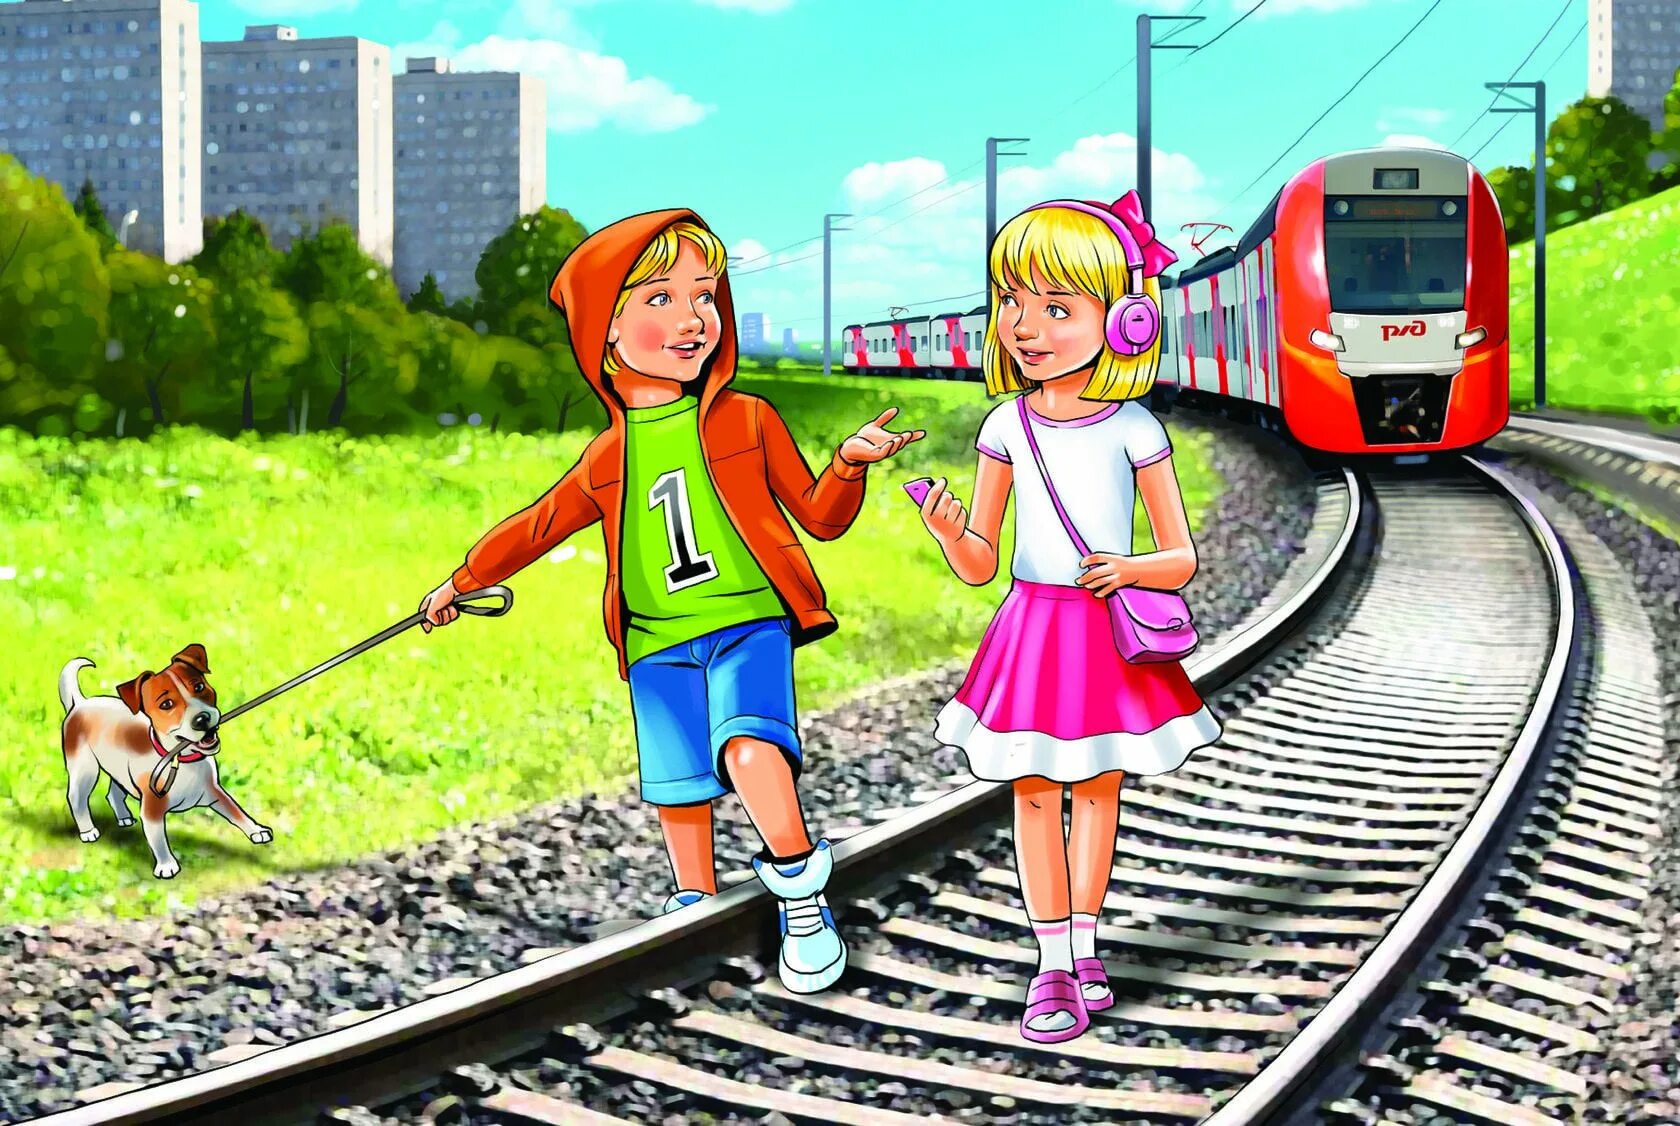 Беседа дорогу коротает смысл. Безопасность на железной дороге. Безопасность на железной дороге для детей. Железная дорога для детей. Железная дорога зона повышенной опасности.